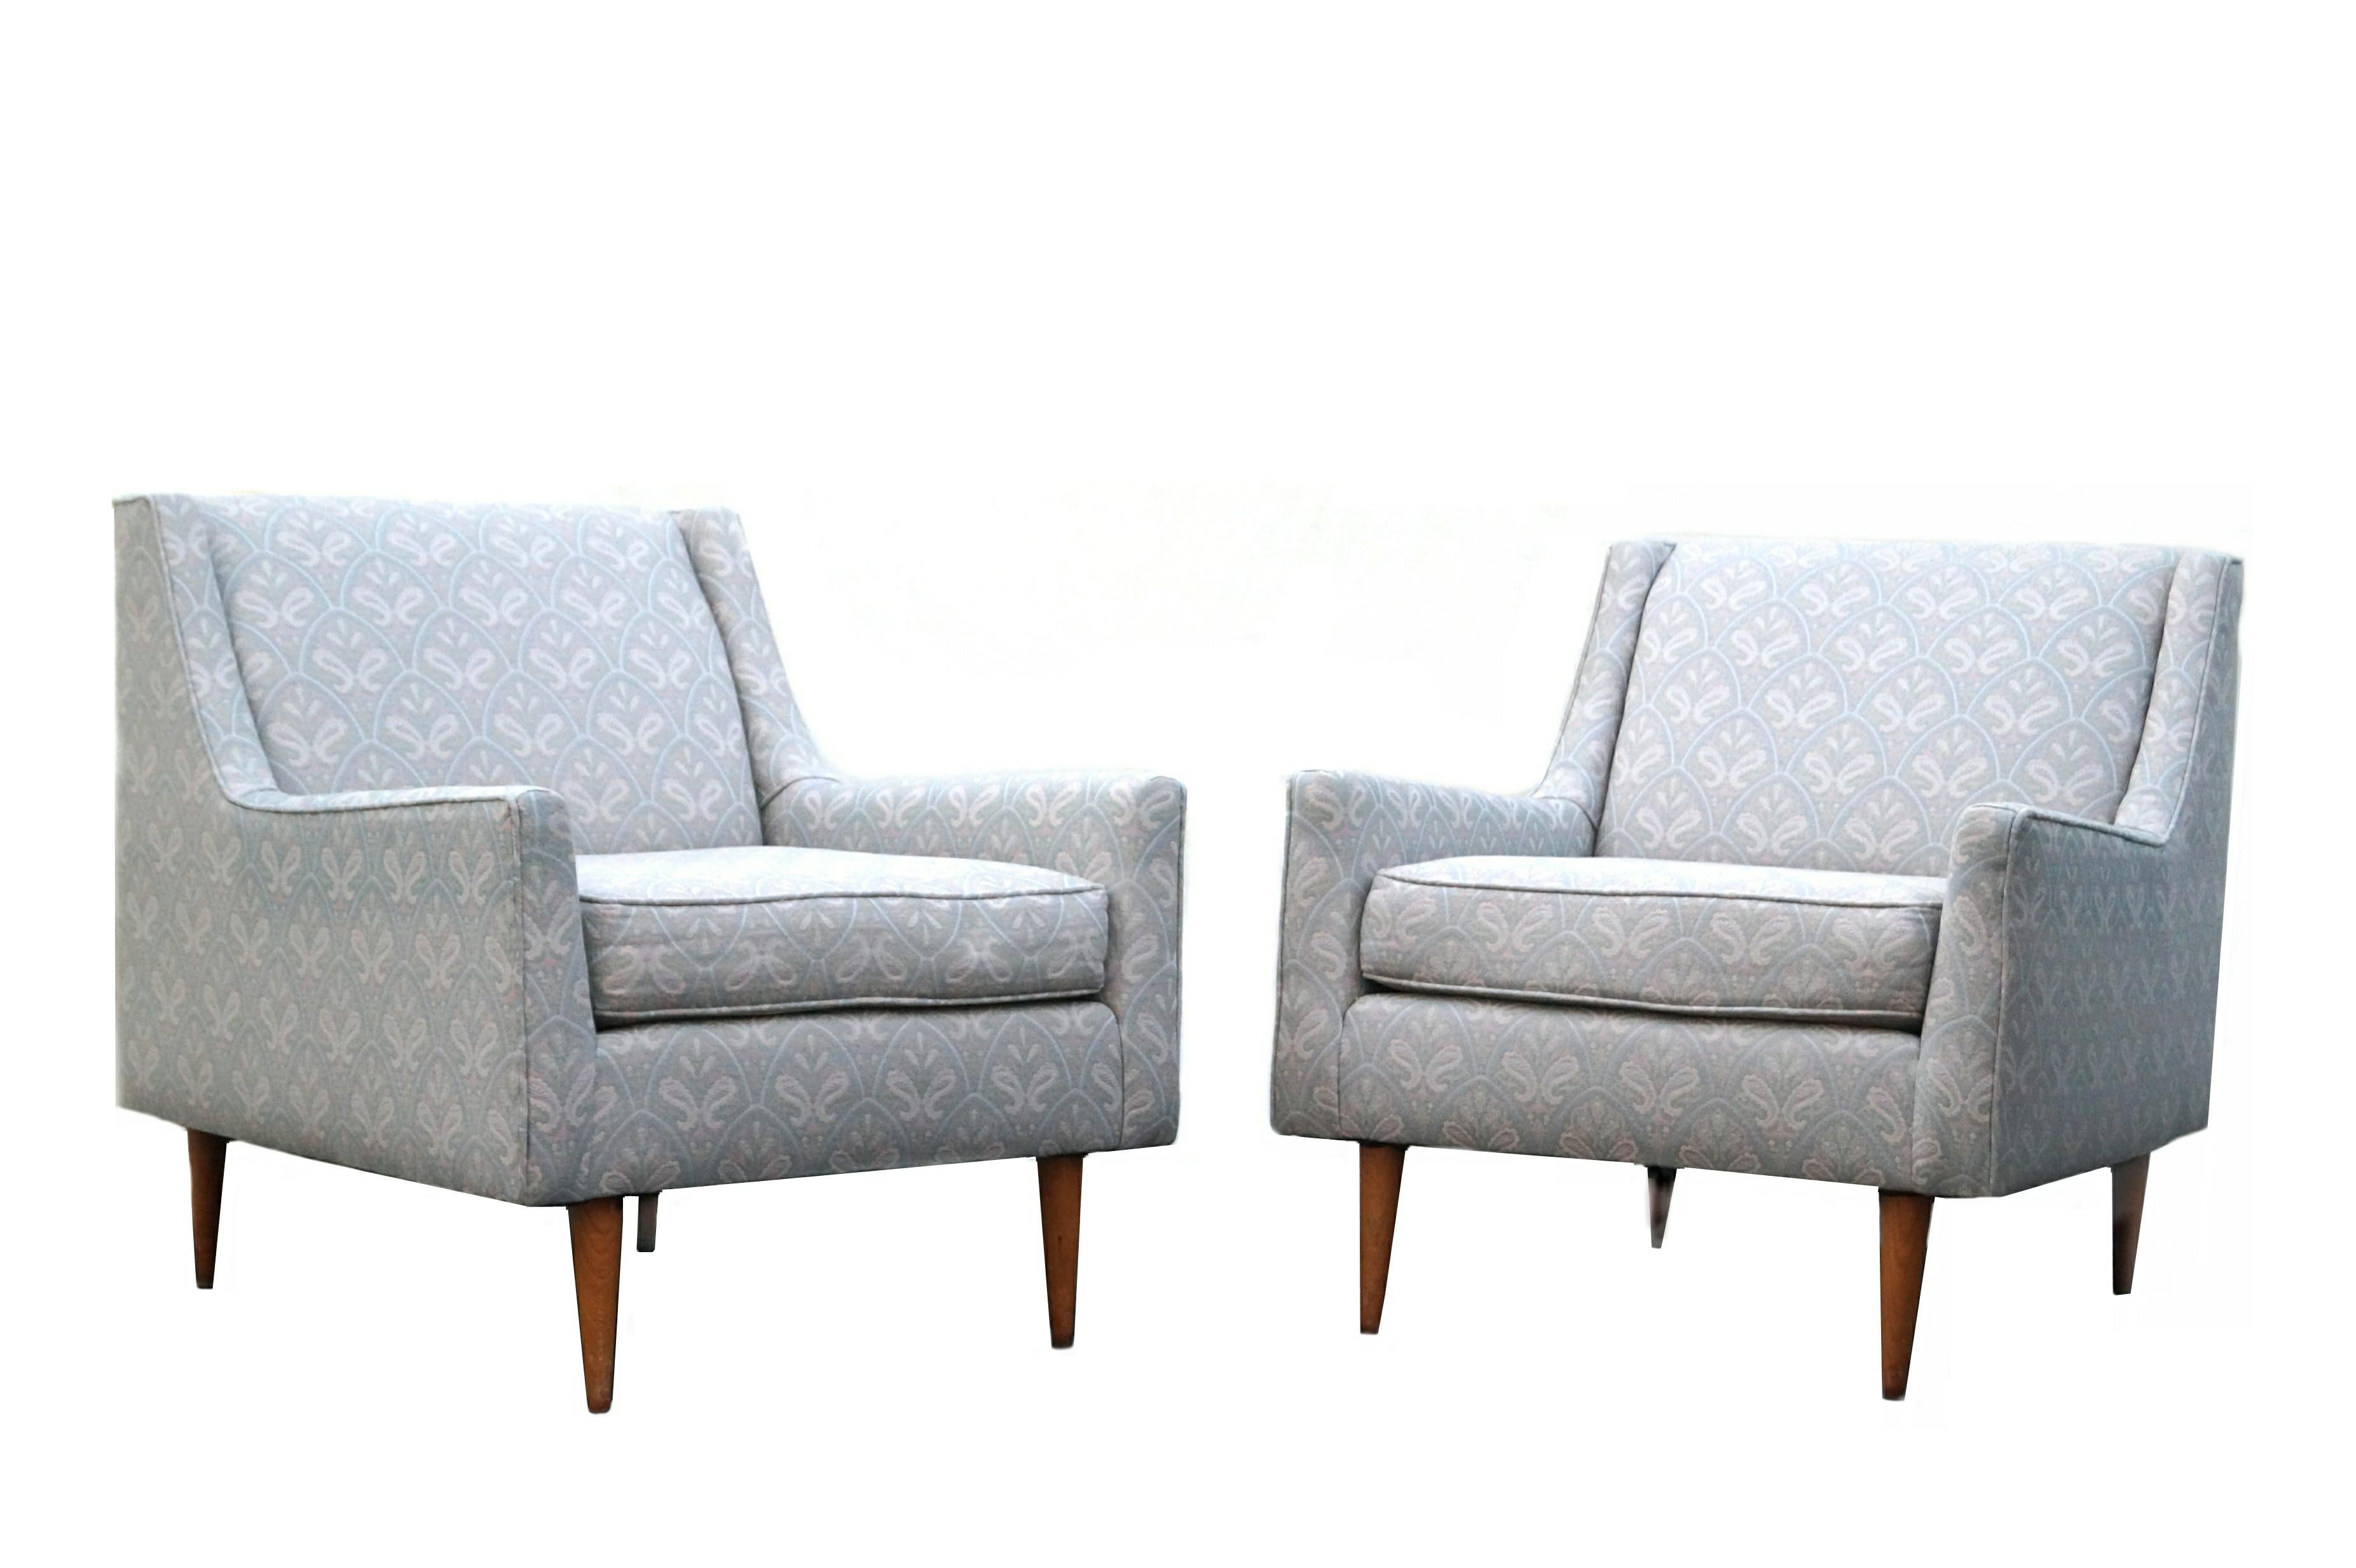 Dies ist ein Paar von 1950's Mid-Century Modern Lounge Stühle, die in den 1970er Jahren neu gepolstert worden zu sein scheinen Sie sind in der Manier von Edward Wormley. Nicht gekennzeichnet oder signiert, da sie neu gepolstert wurden.
Wenn Sie sich